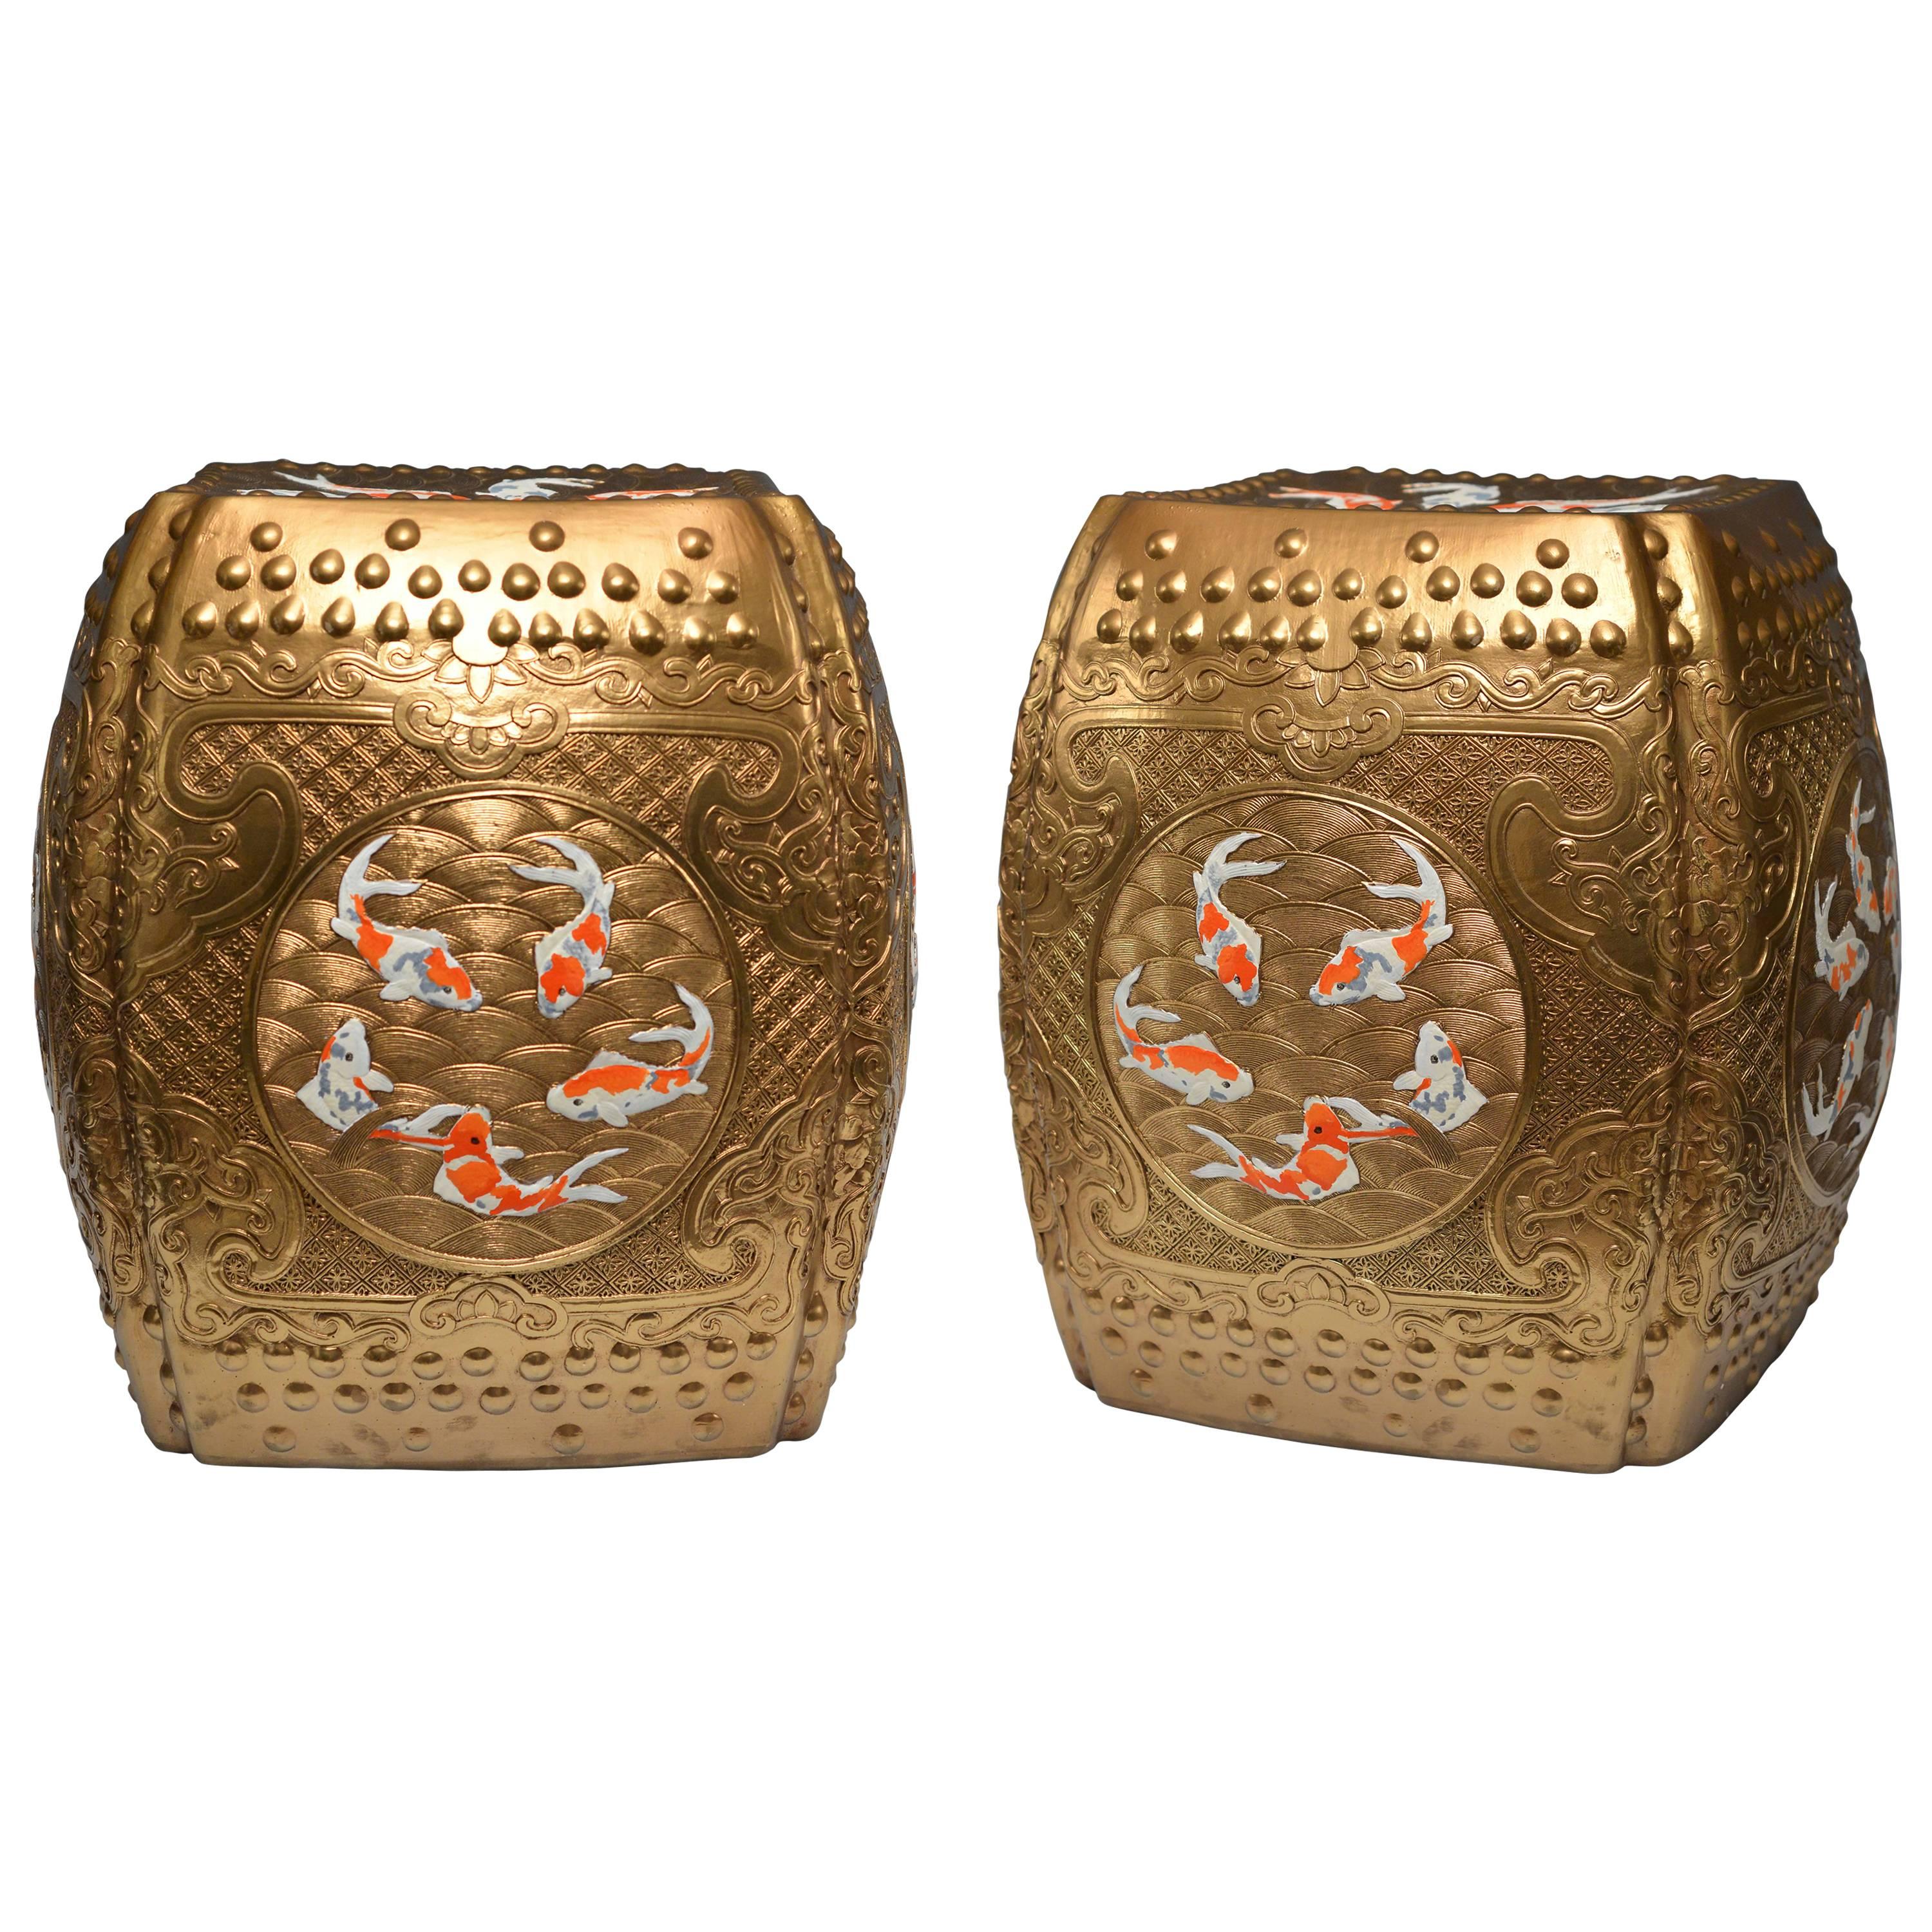 Pair of Fine Carved Golden Glazed Porcelain Stools